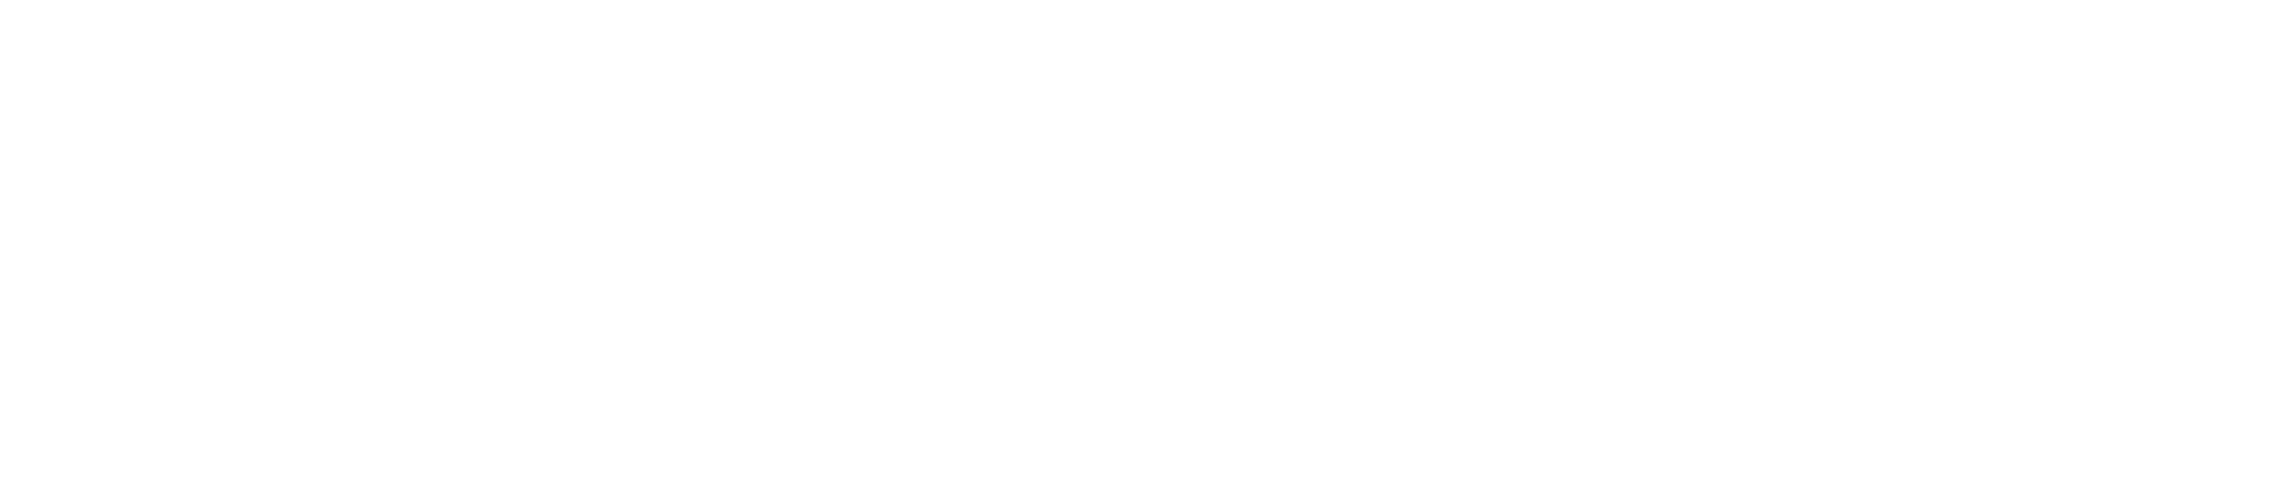 21 dagen (2)